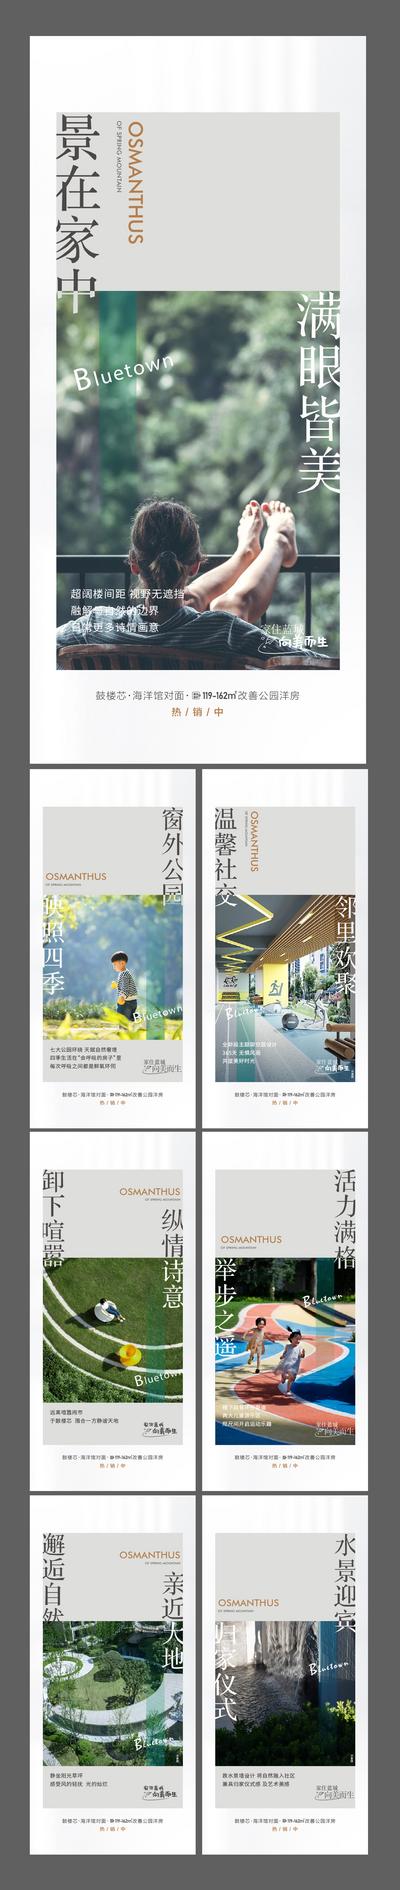 南门网 广告 海报 地产 园林 公园 卖点 配套 蓝城 系列 品质